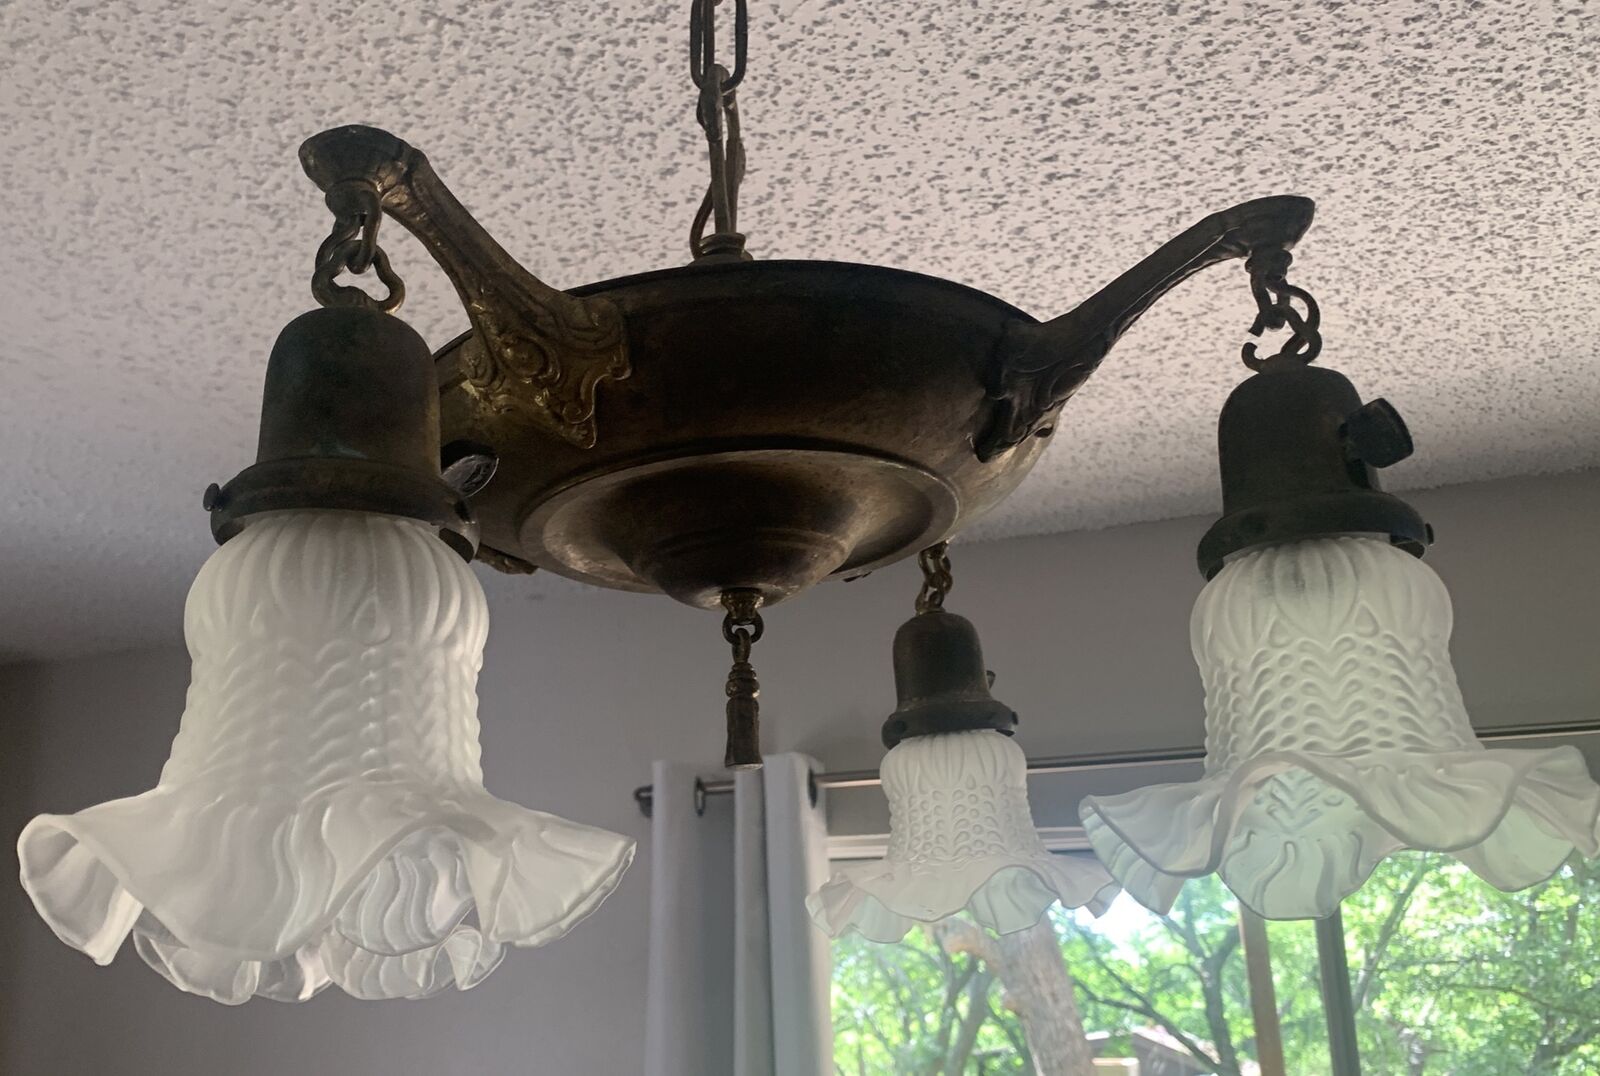 17” wide Antique 5 Light Brass Pan Chandelier Light / Ceiling Fixture No Globes